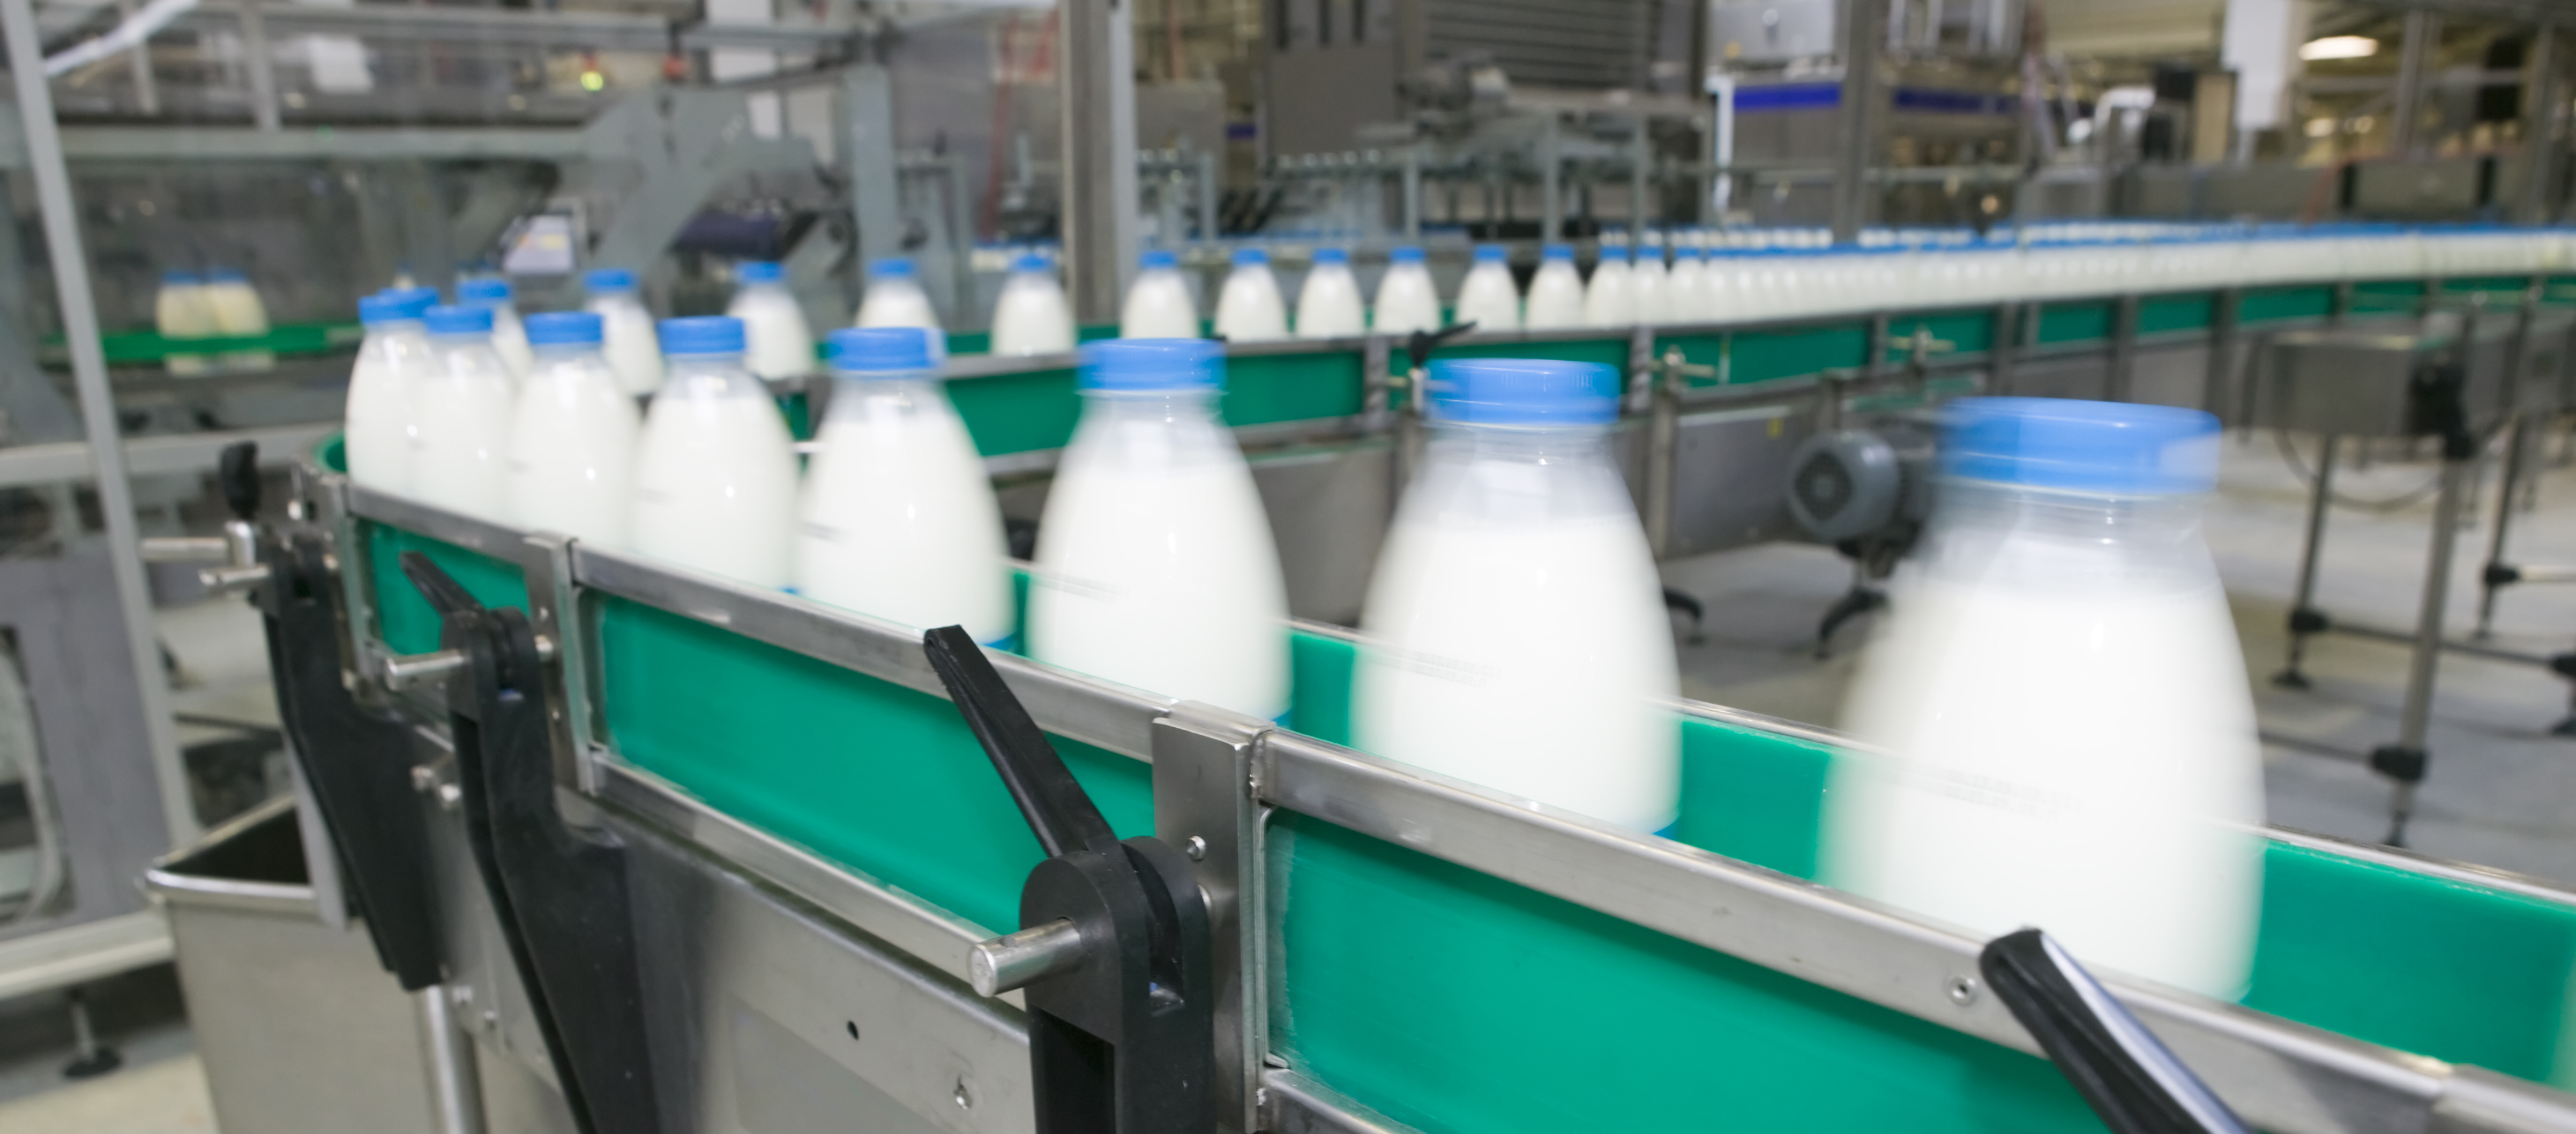 Conveyor in dairy plant transporting milk bottles